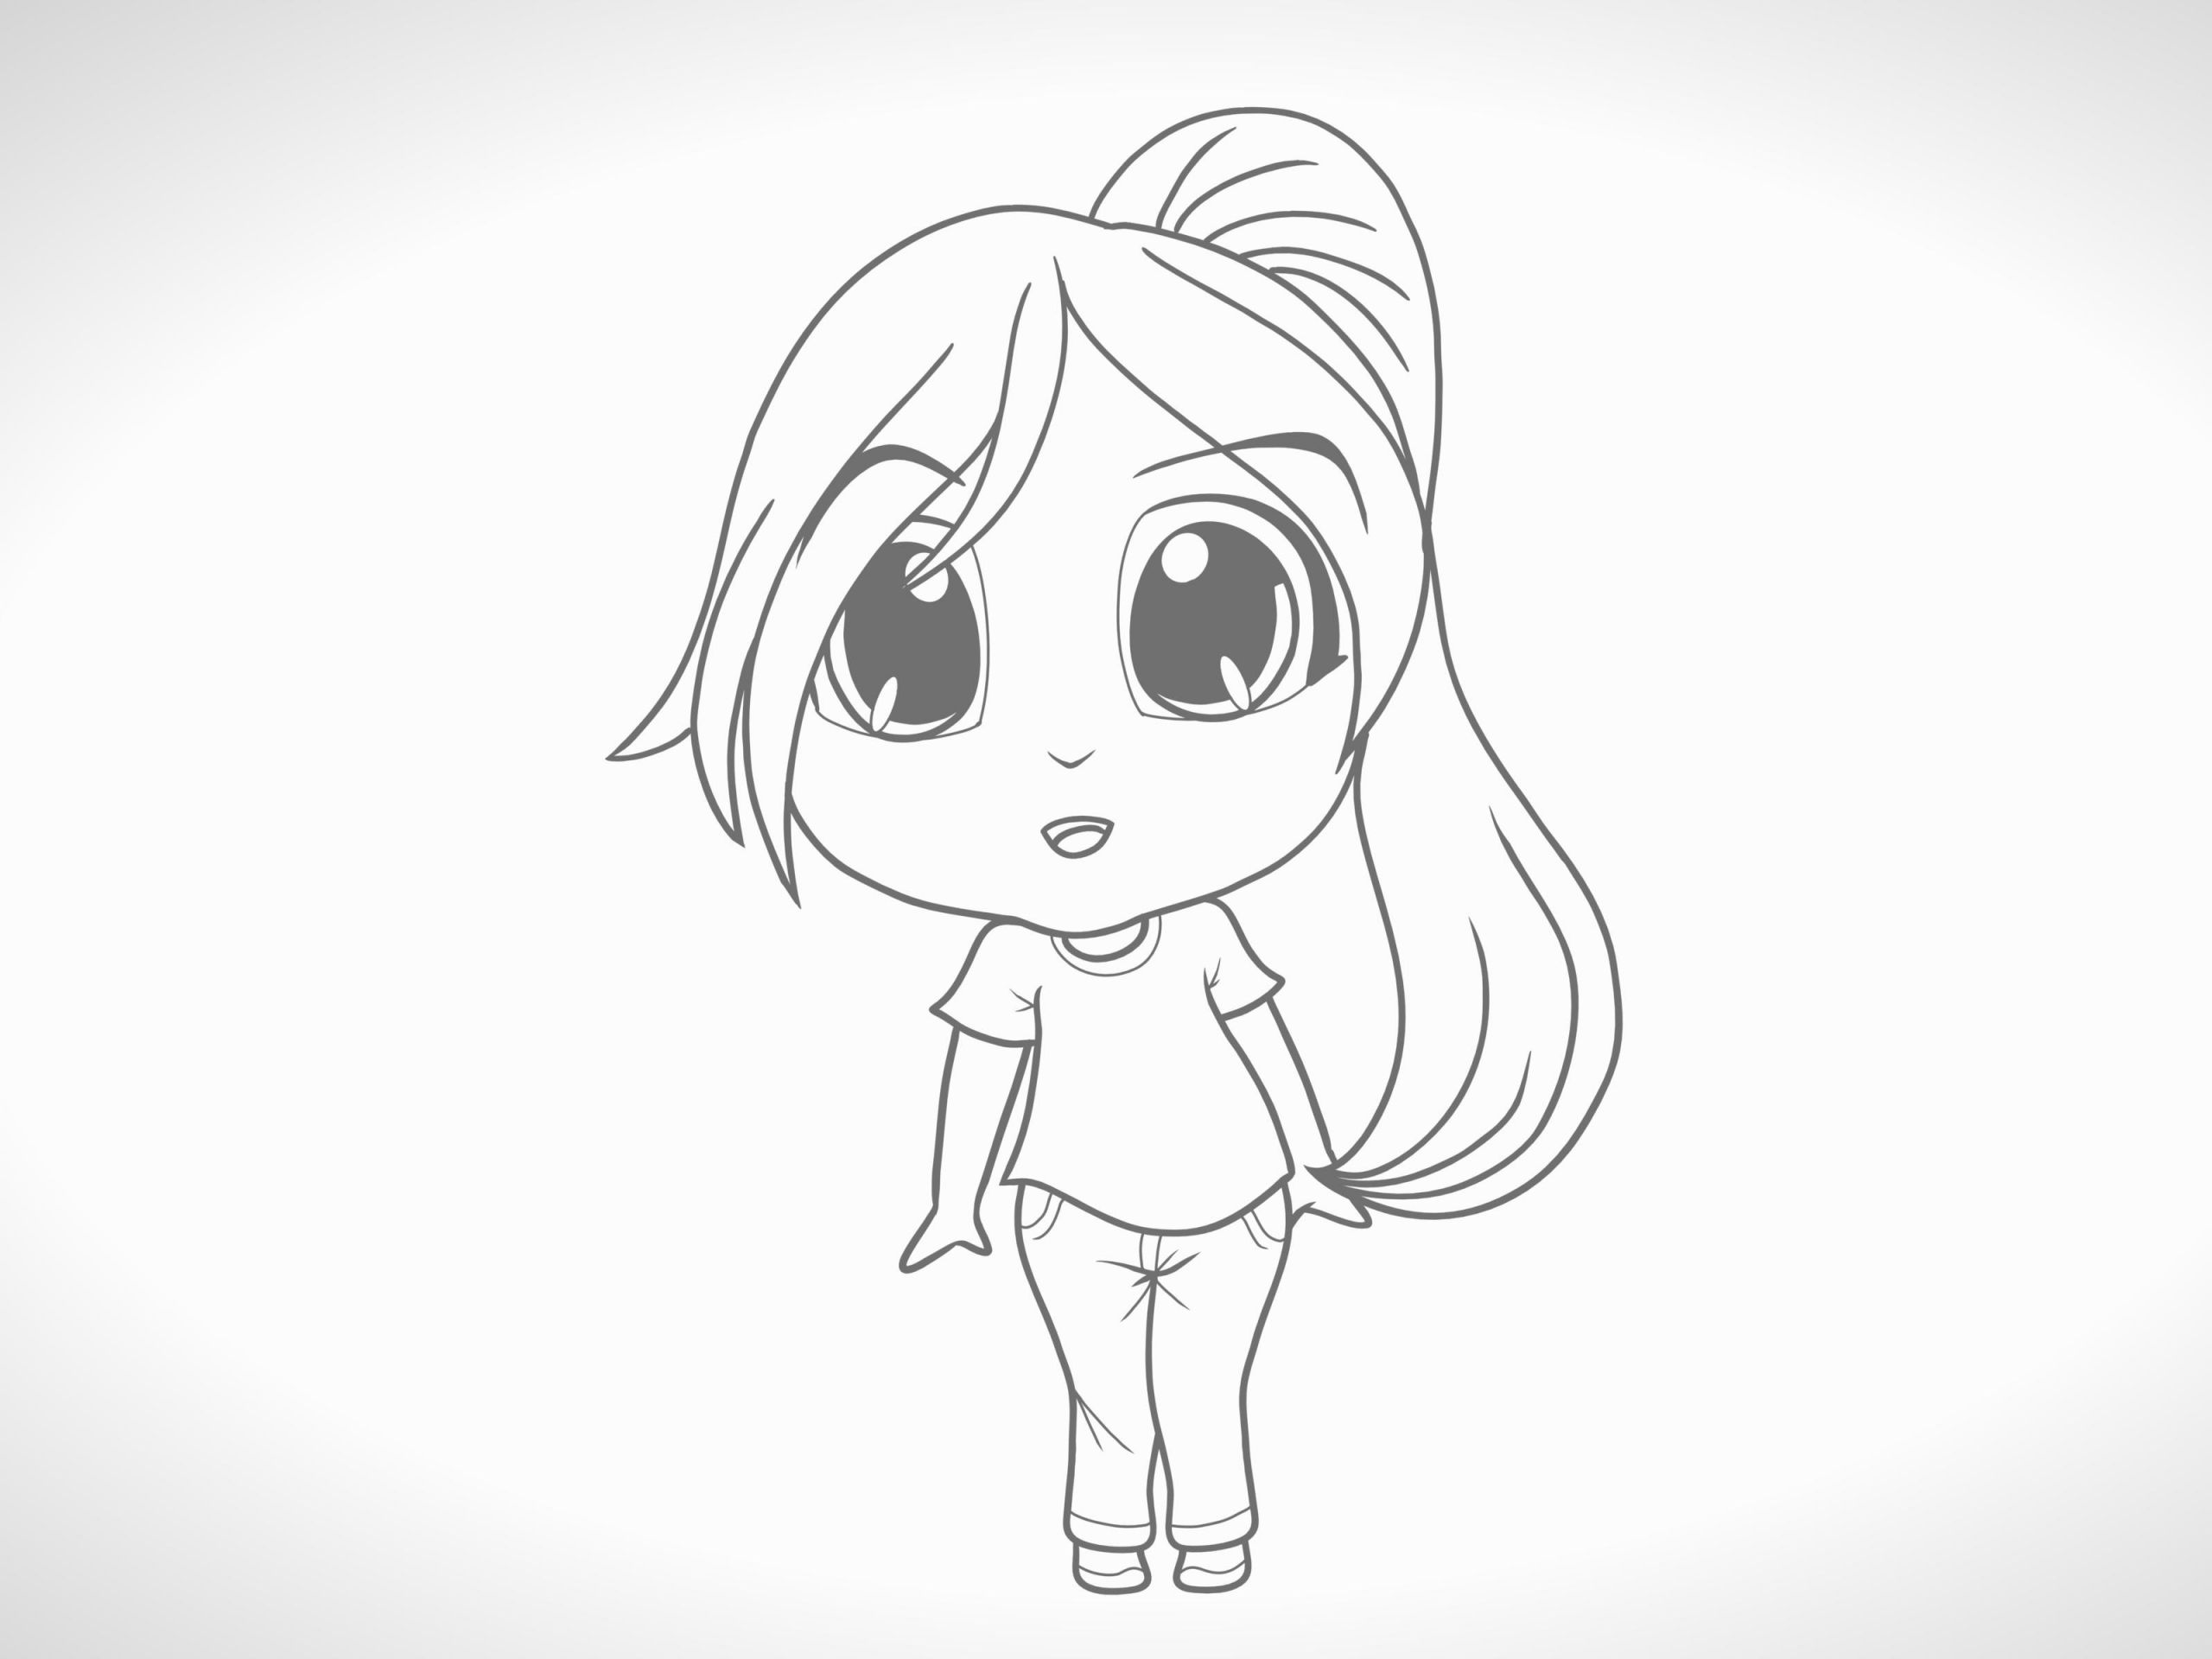 Steps How to Draw Anime Characters Eine Chibi Figur Zeichnen 12 Schritte Mit Bildern Wikihow